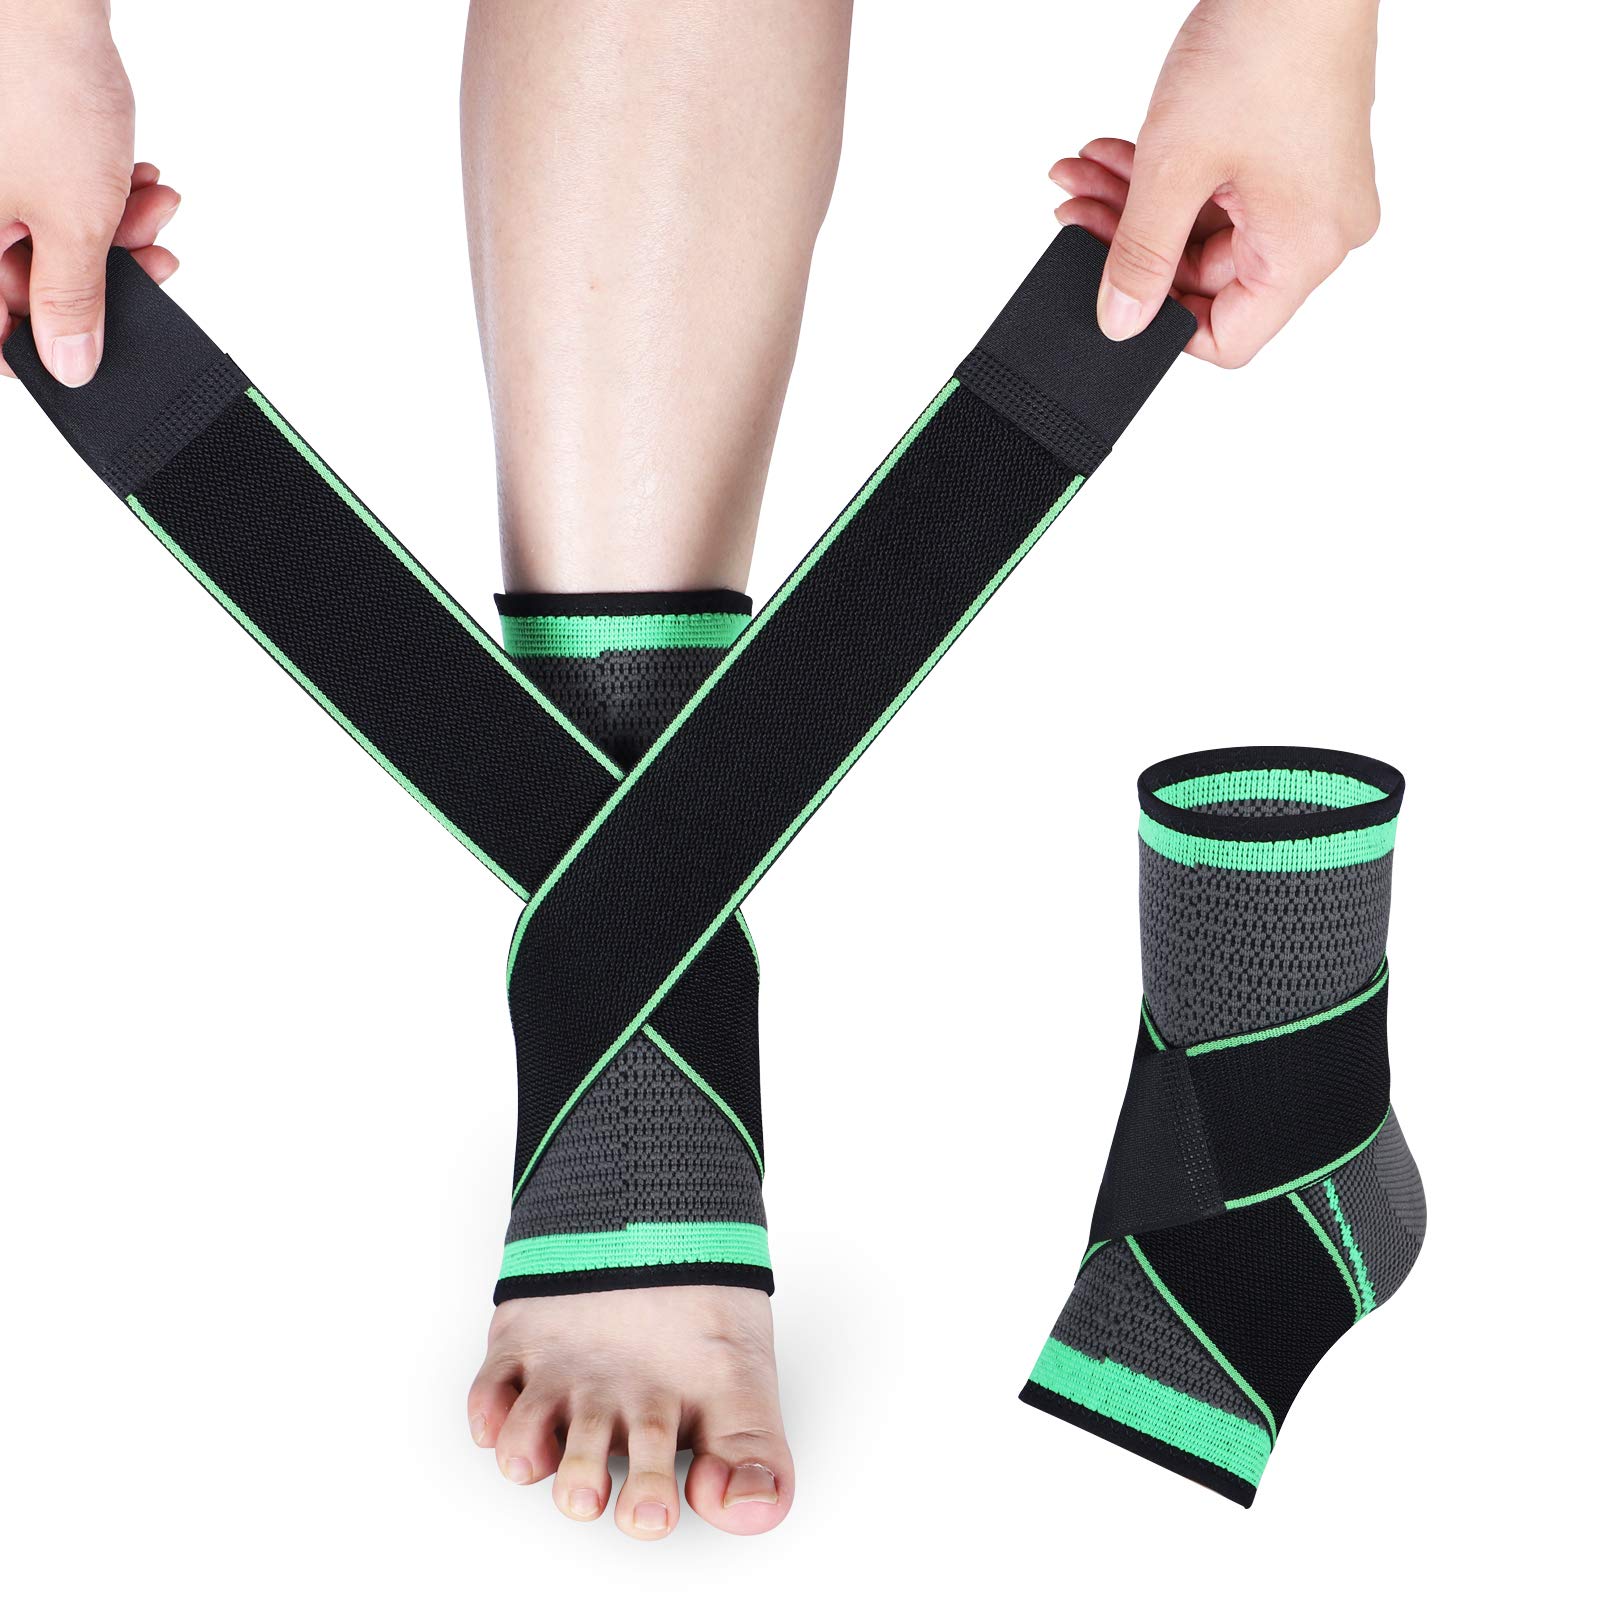 Ankle Support Brace, Adjustable Compression Ankle Support, for Men